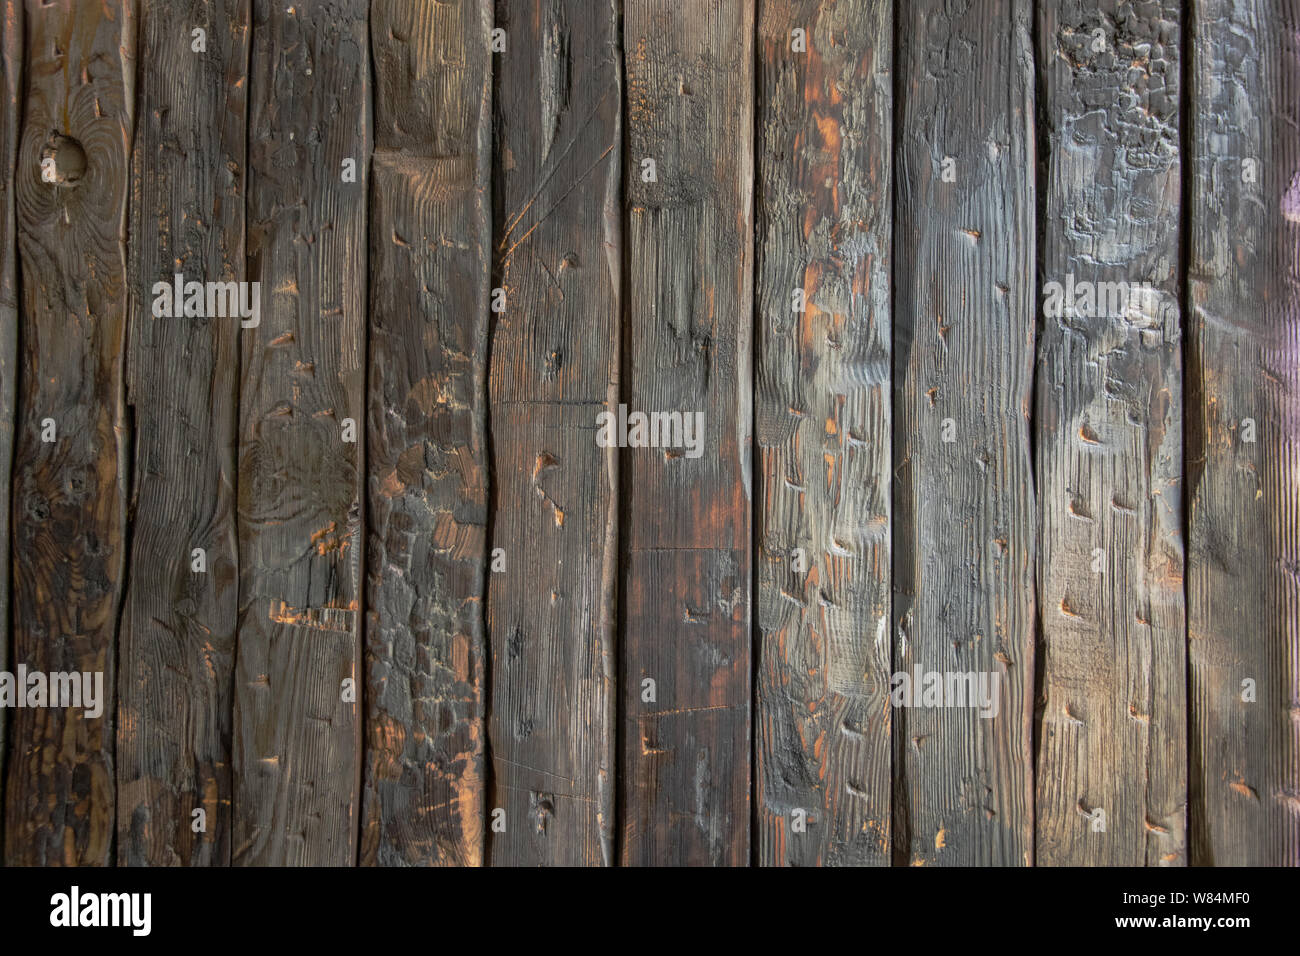 Charred planks gợi nhớ đến một khung cảnh được quay trong những bộ phim tài liệu về cháy rừng. Tuy nhiên, ở trên thực tế, charred planks giúp mang đến một chất liệu nghệ thuật độc đáo cho các dự án trang trí nhà cửa. Hãy cùng khám phá hình ảnh này để tìm hiểu thêm về charred planks!